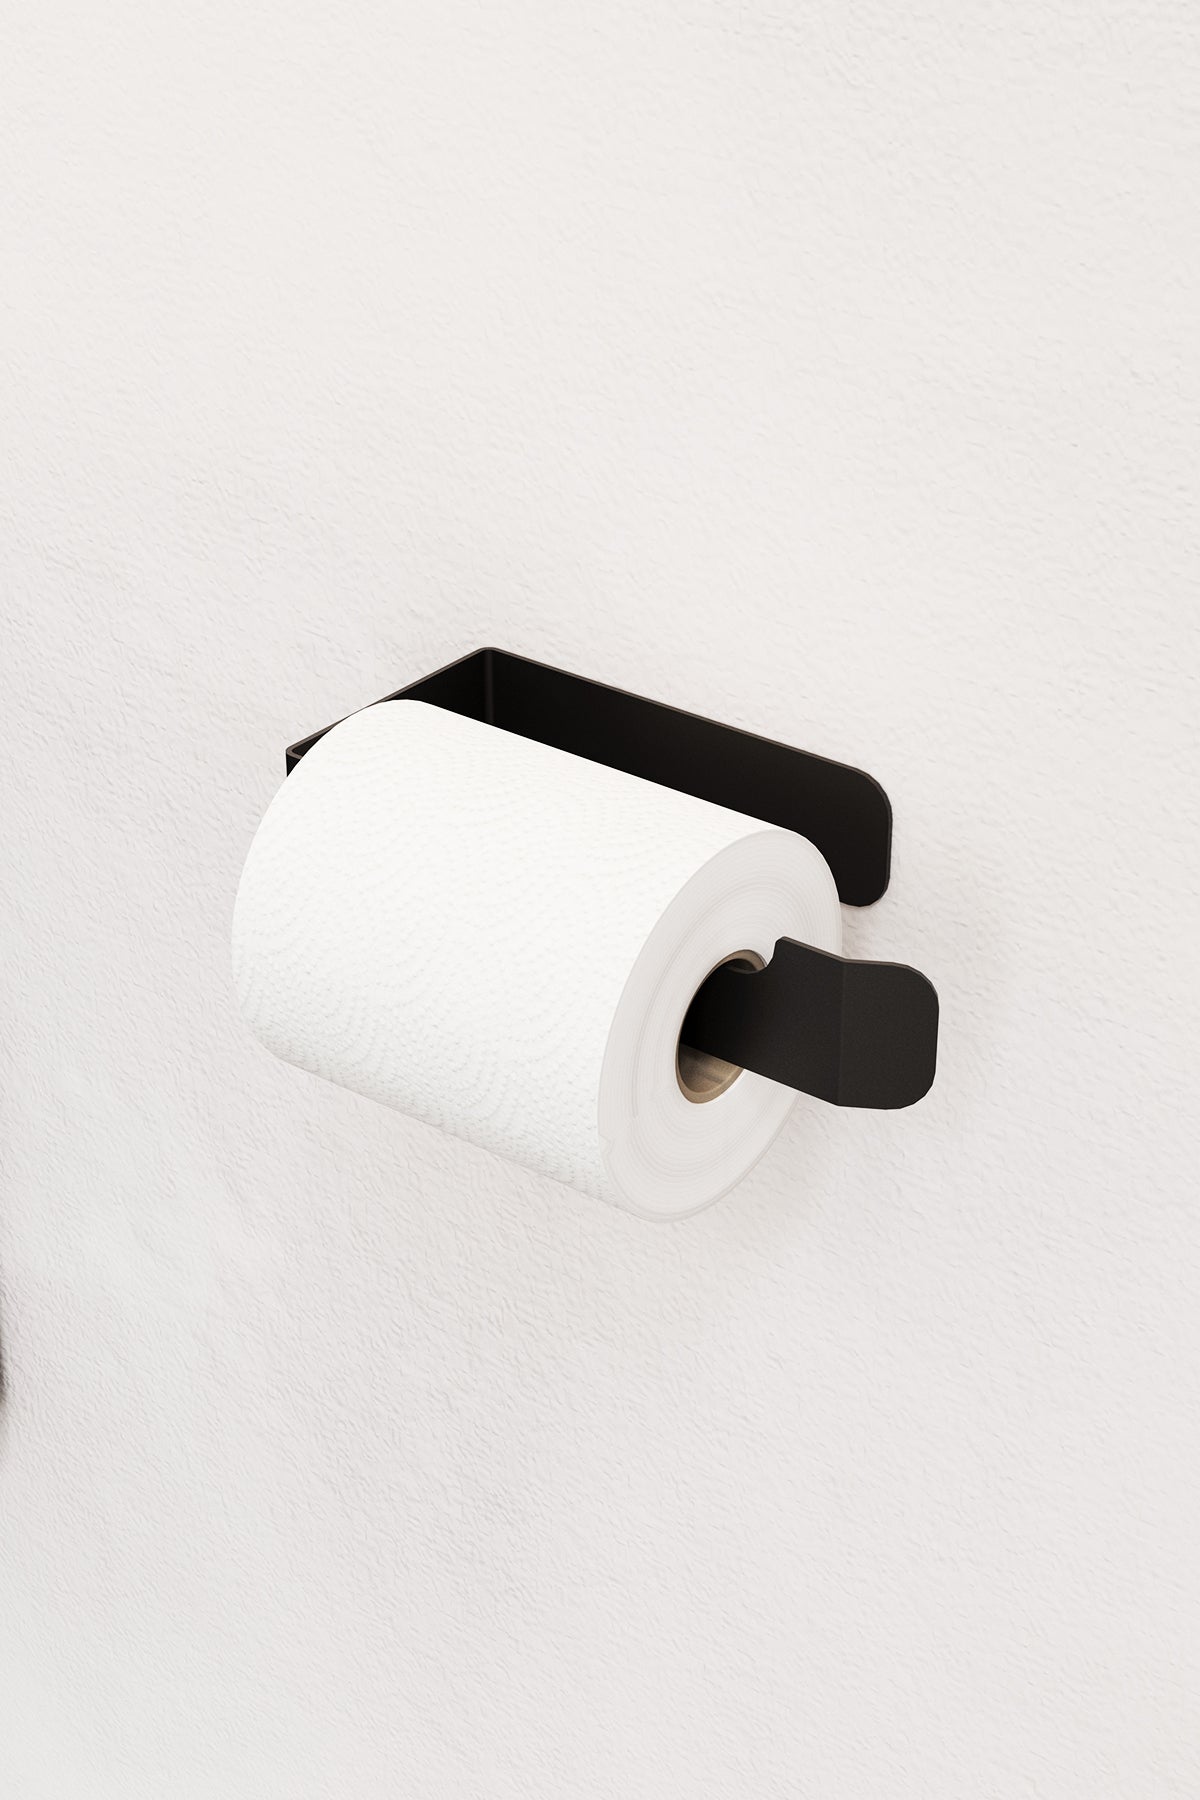 Paslanmaz Çelik Yapışkanlı Tuvalet Kağıdı Askısı , Modern Wc Kağıdı Standı - PİENZA